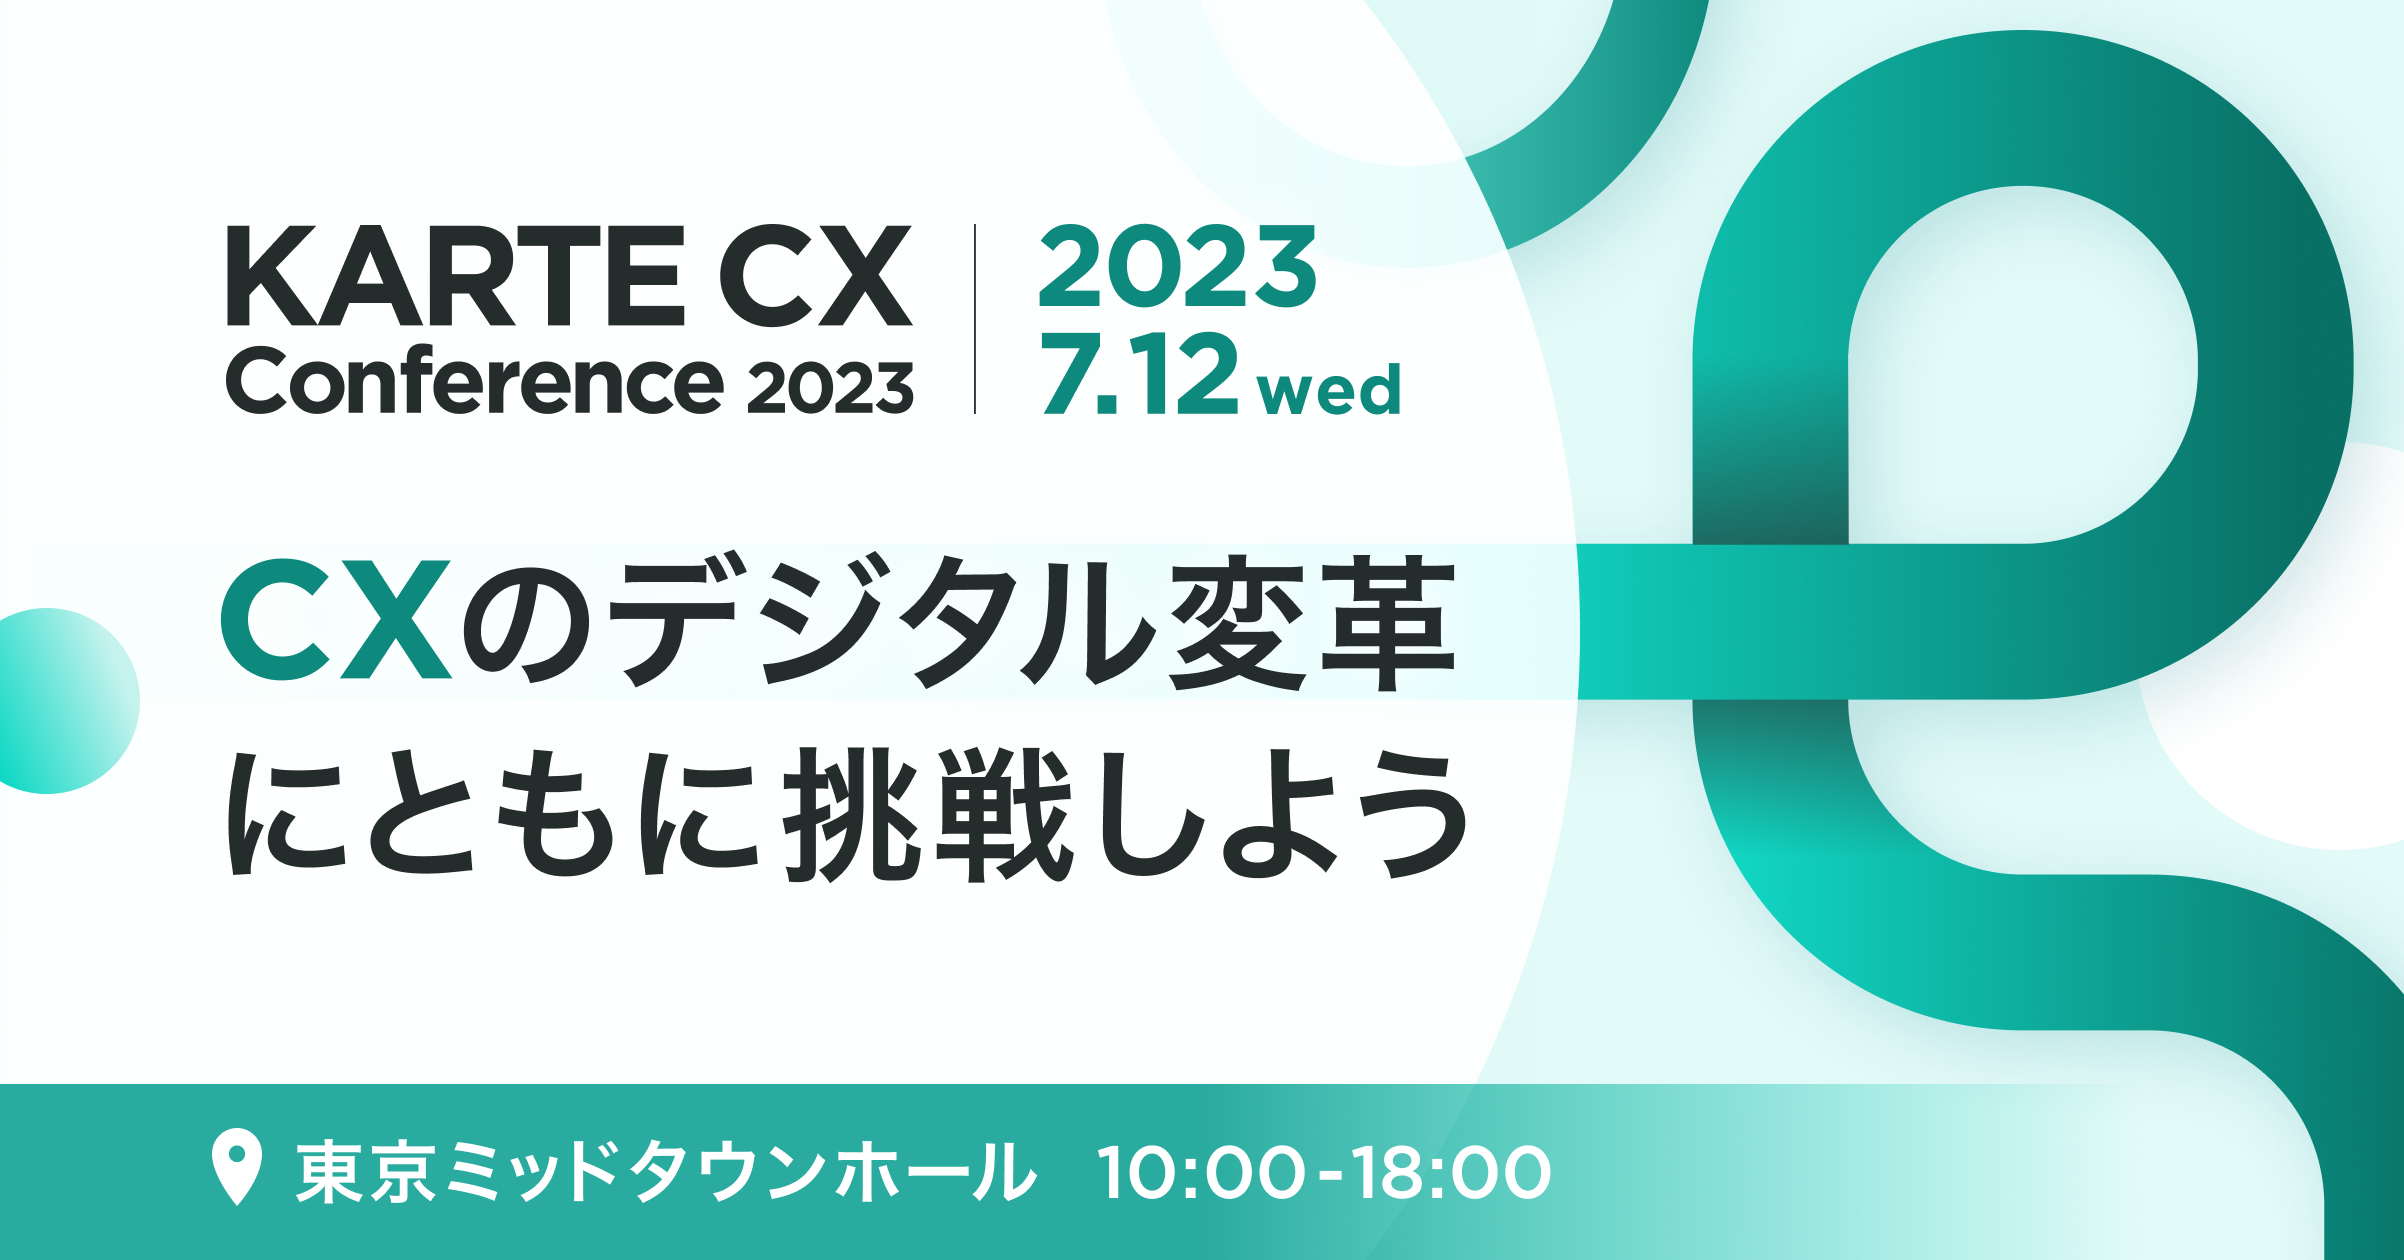 プレイド主催の顧客向け年次カンファレンス「KARTE CX Conference 2023」 7月12日（水）開催 #KARTE_CXC